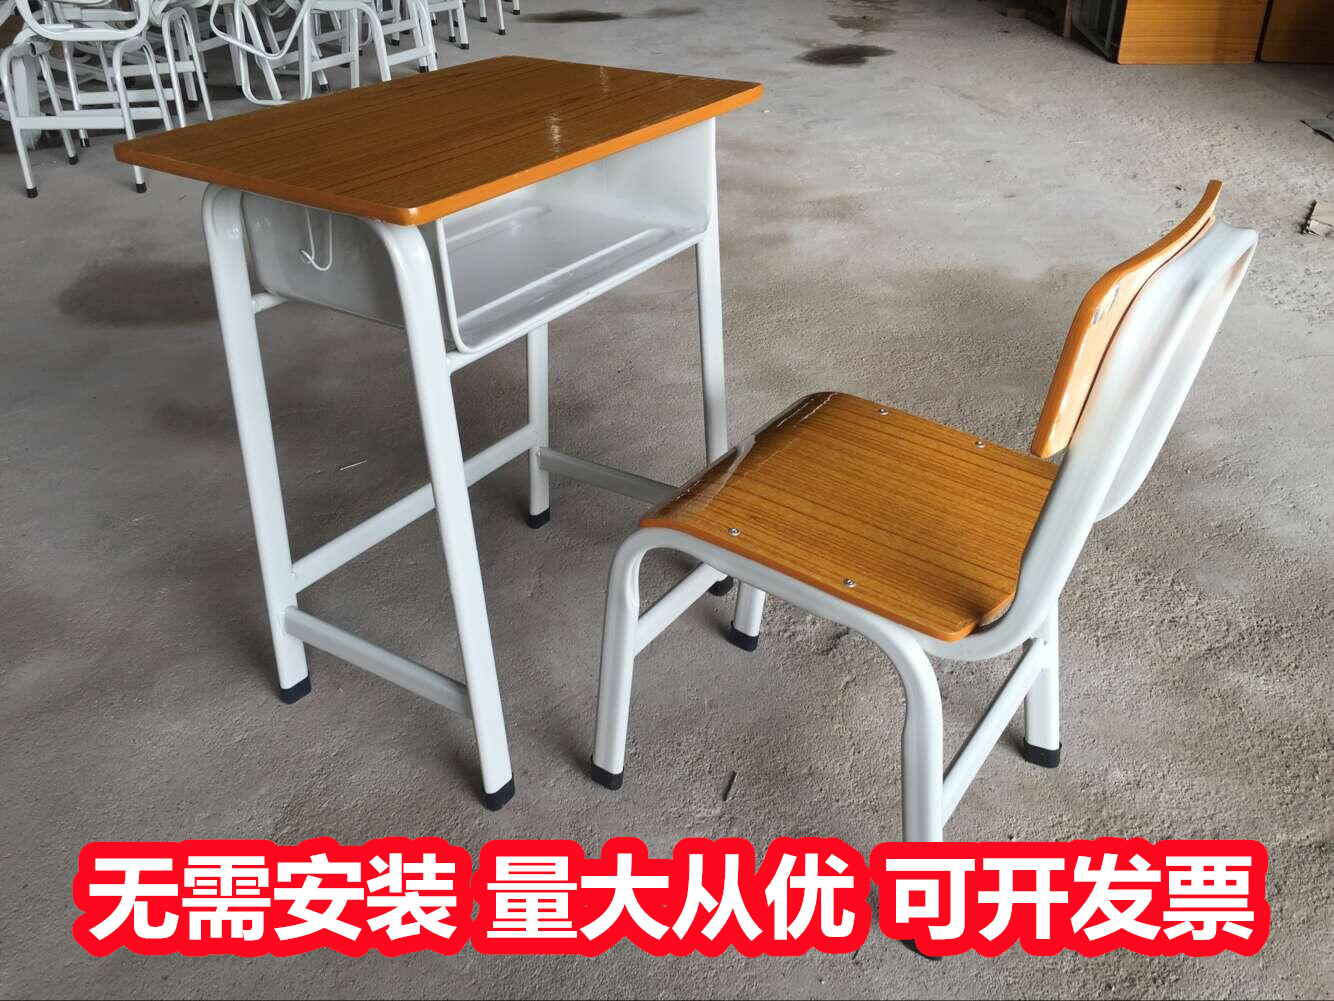 批发供应南宁青秀升降课桌椅规格,可折叠课桌椅